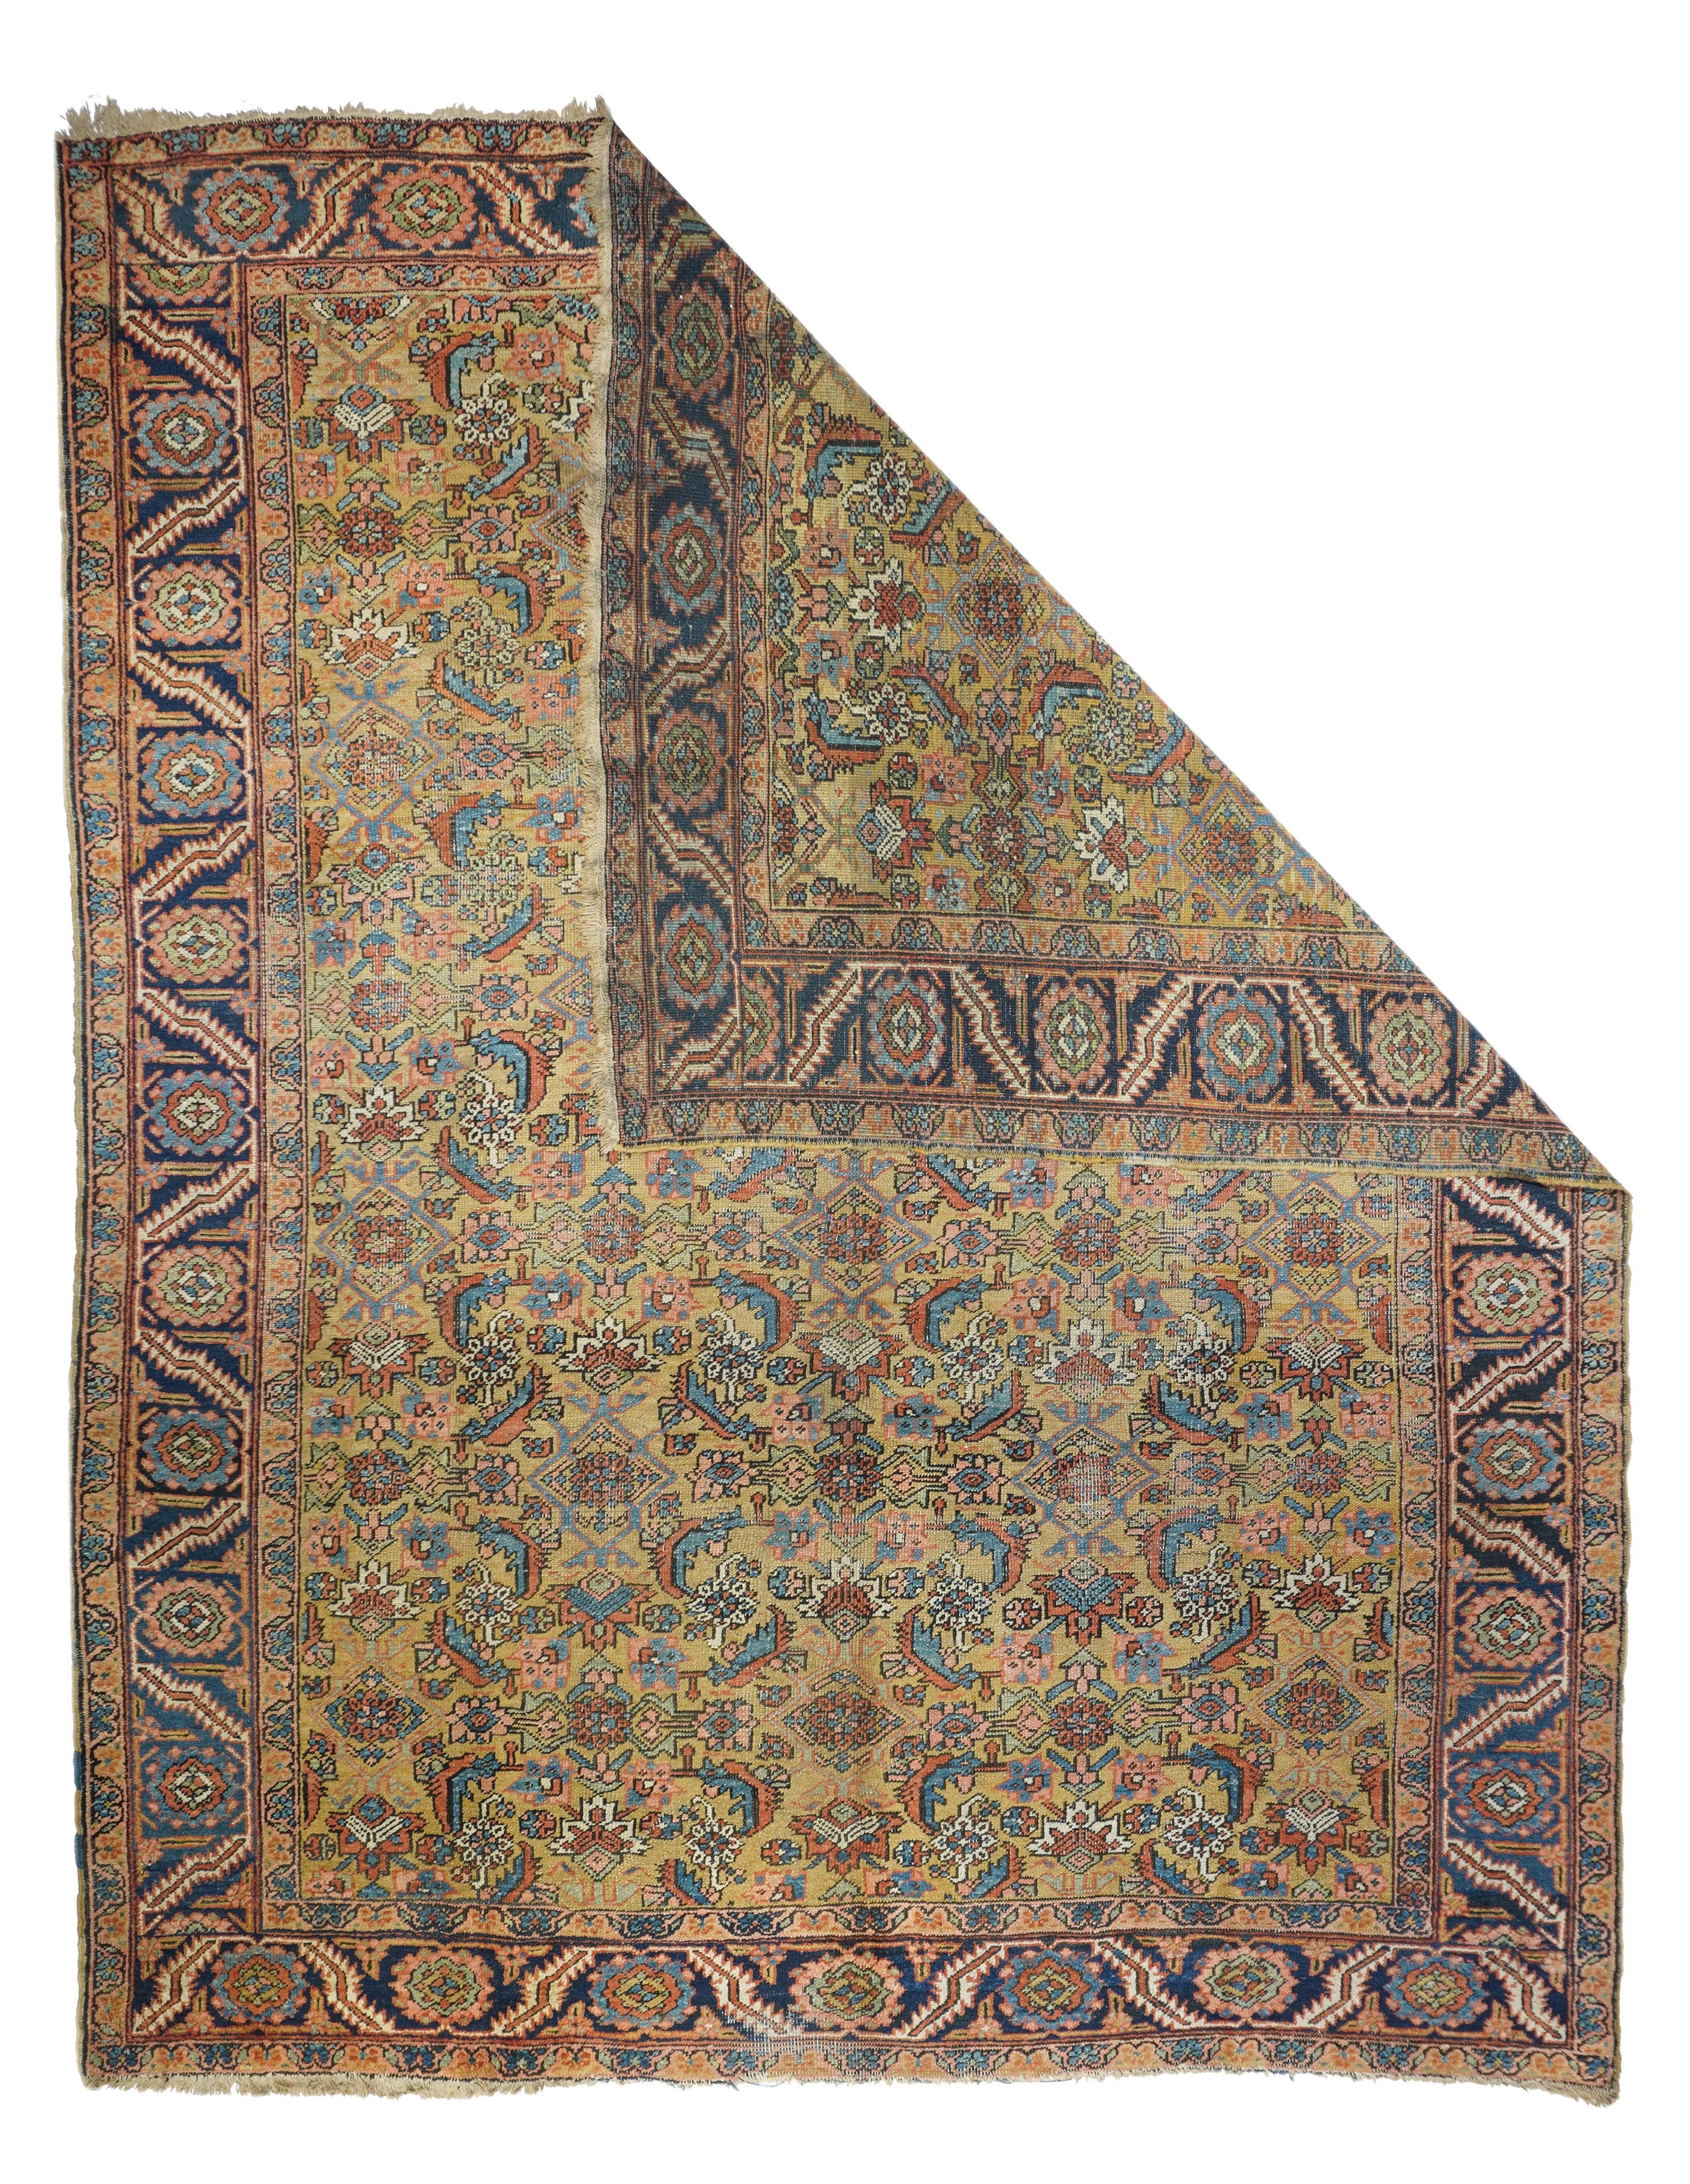 Antique Heriz rug. Measures: 9' x 11.2''.